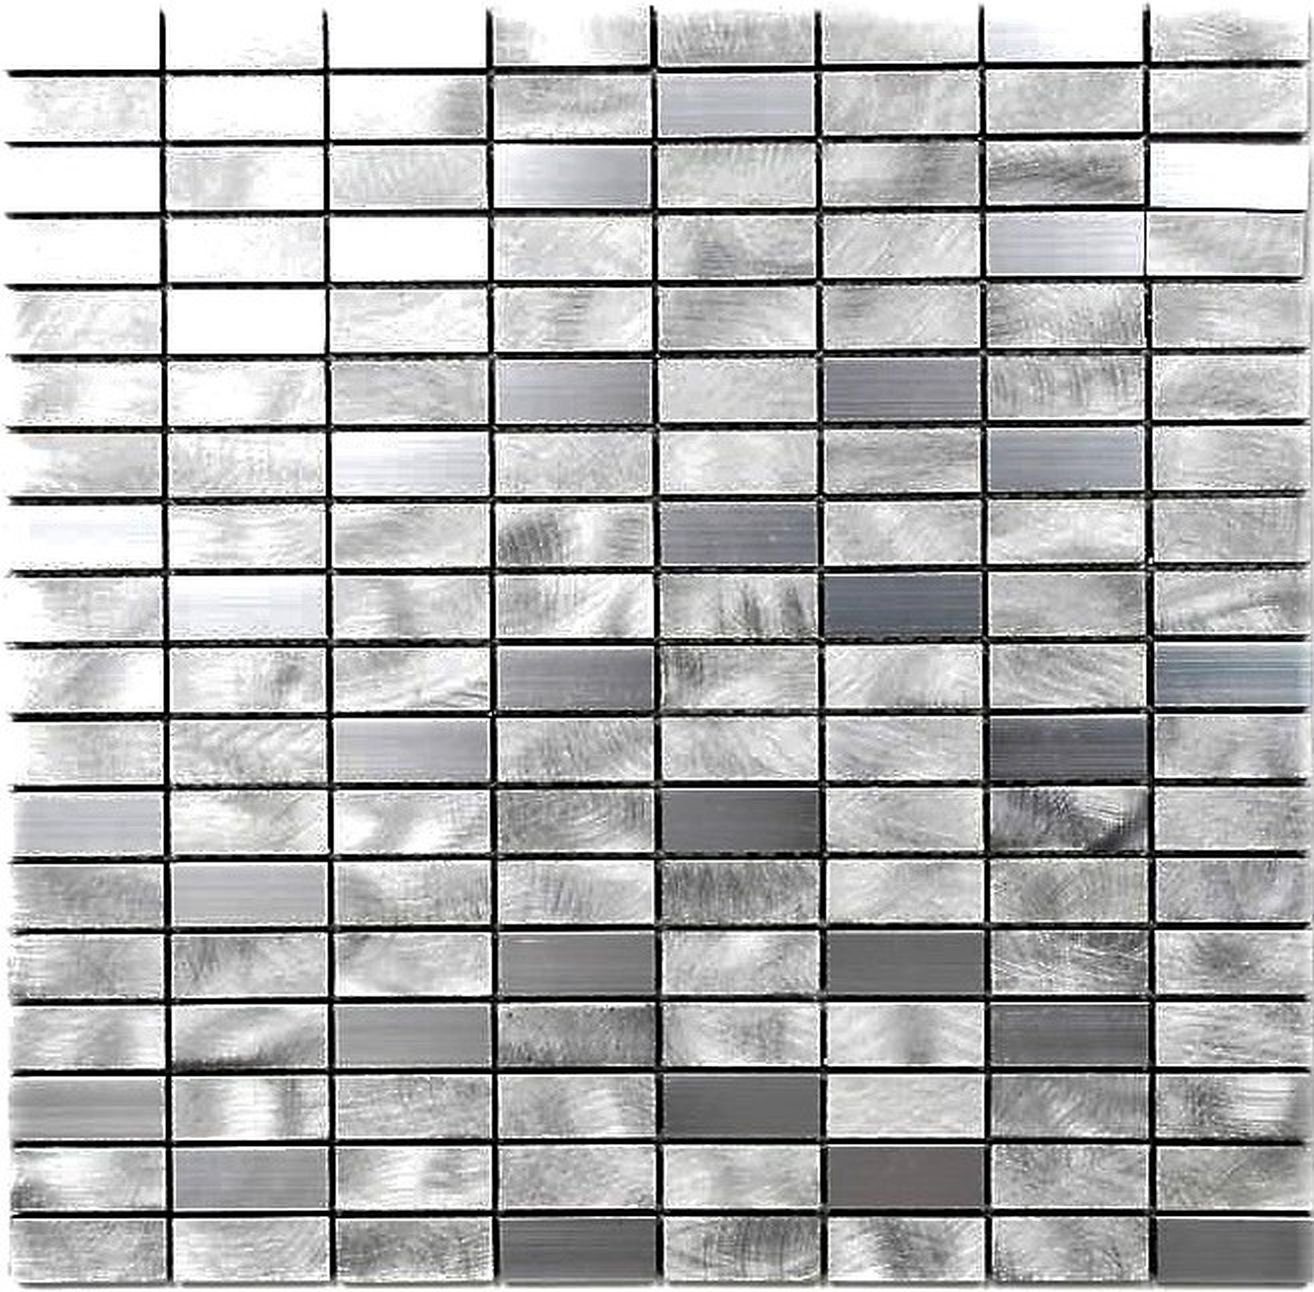 Mosani Mosaikfliesen Mosaik Fliese Aluminium silber gebürstet poliert Küche